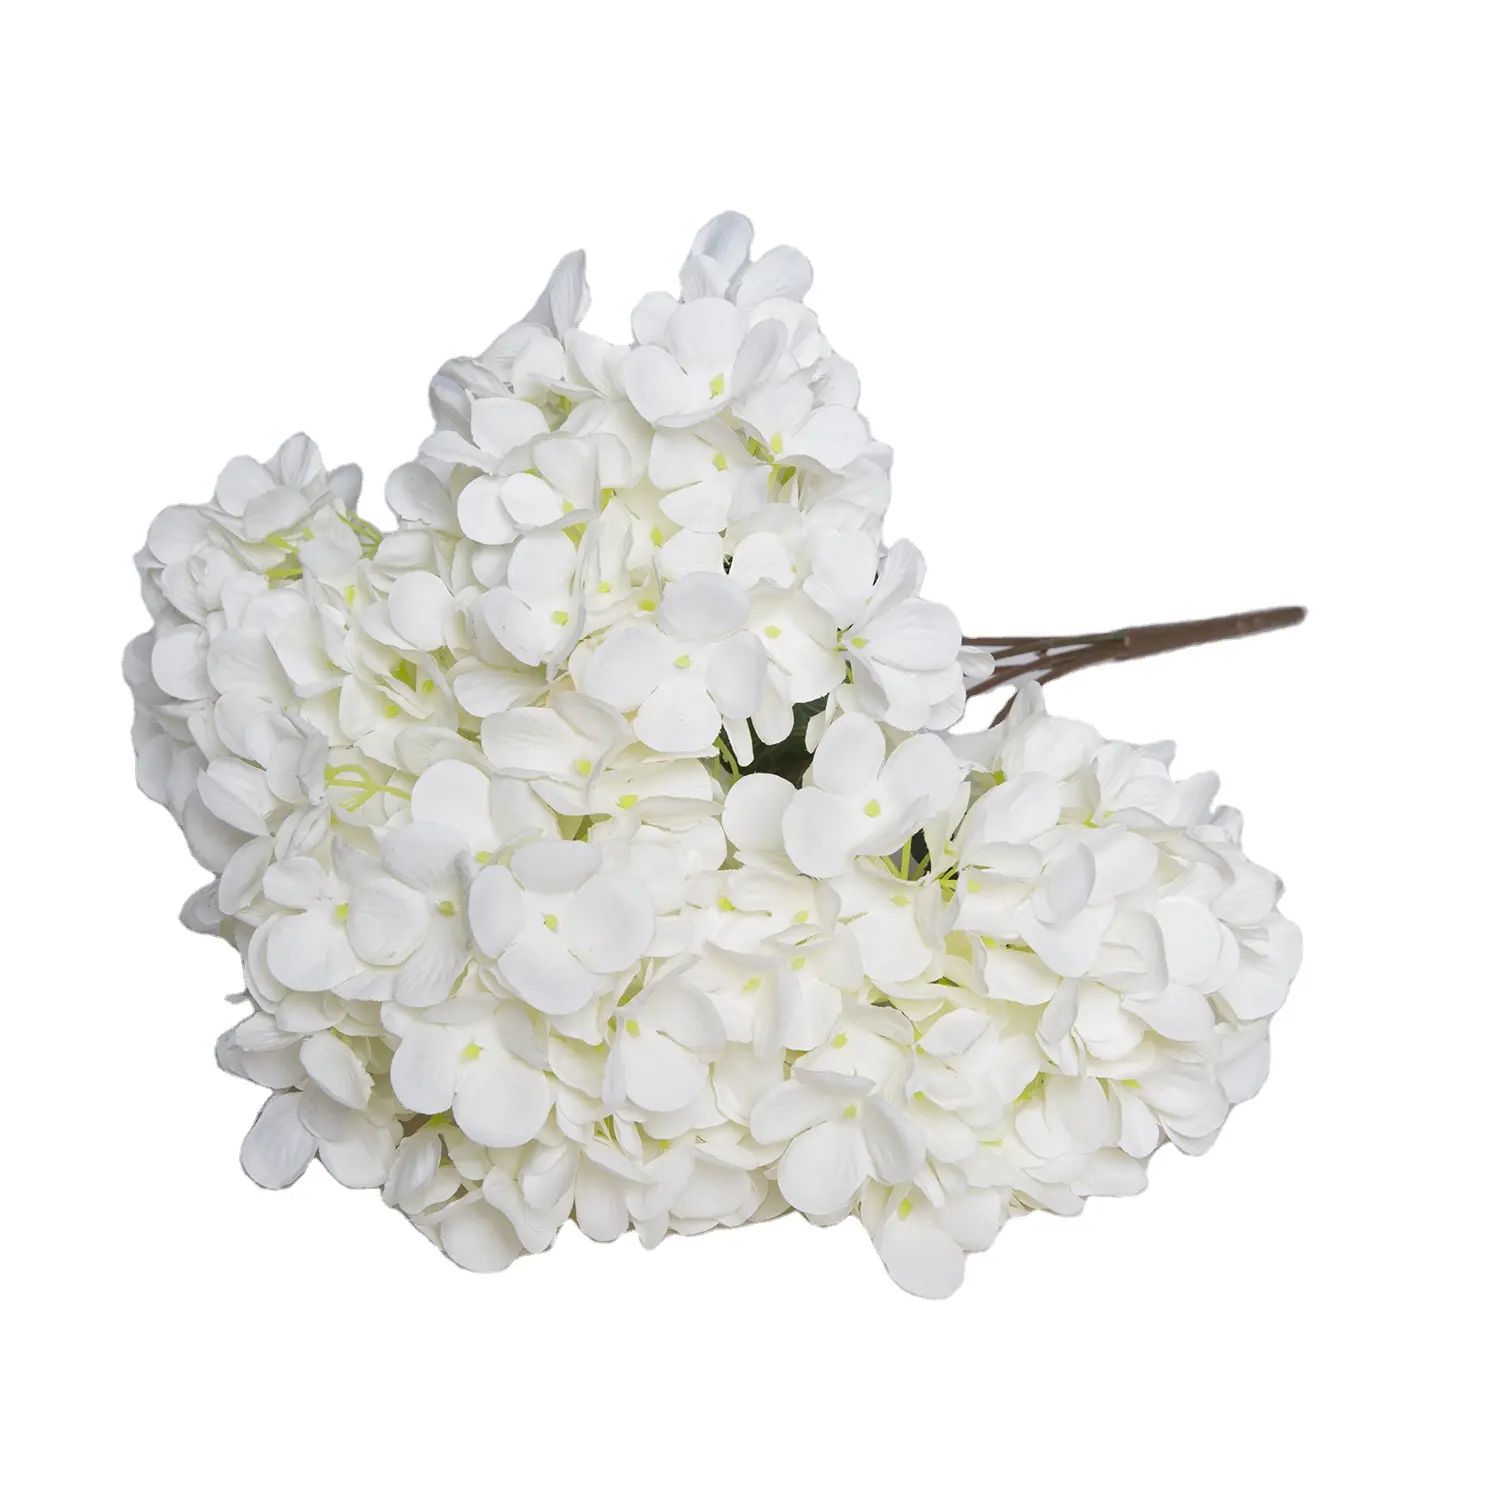 Artificial Hydrangea Flowers Silk Flower Arrangements for Weddings Hydrangea Flower Wall